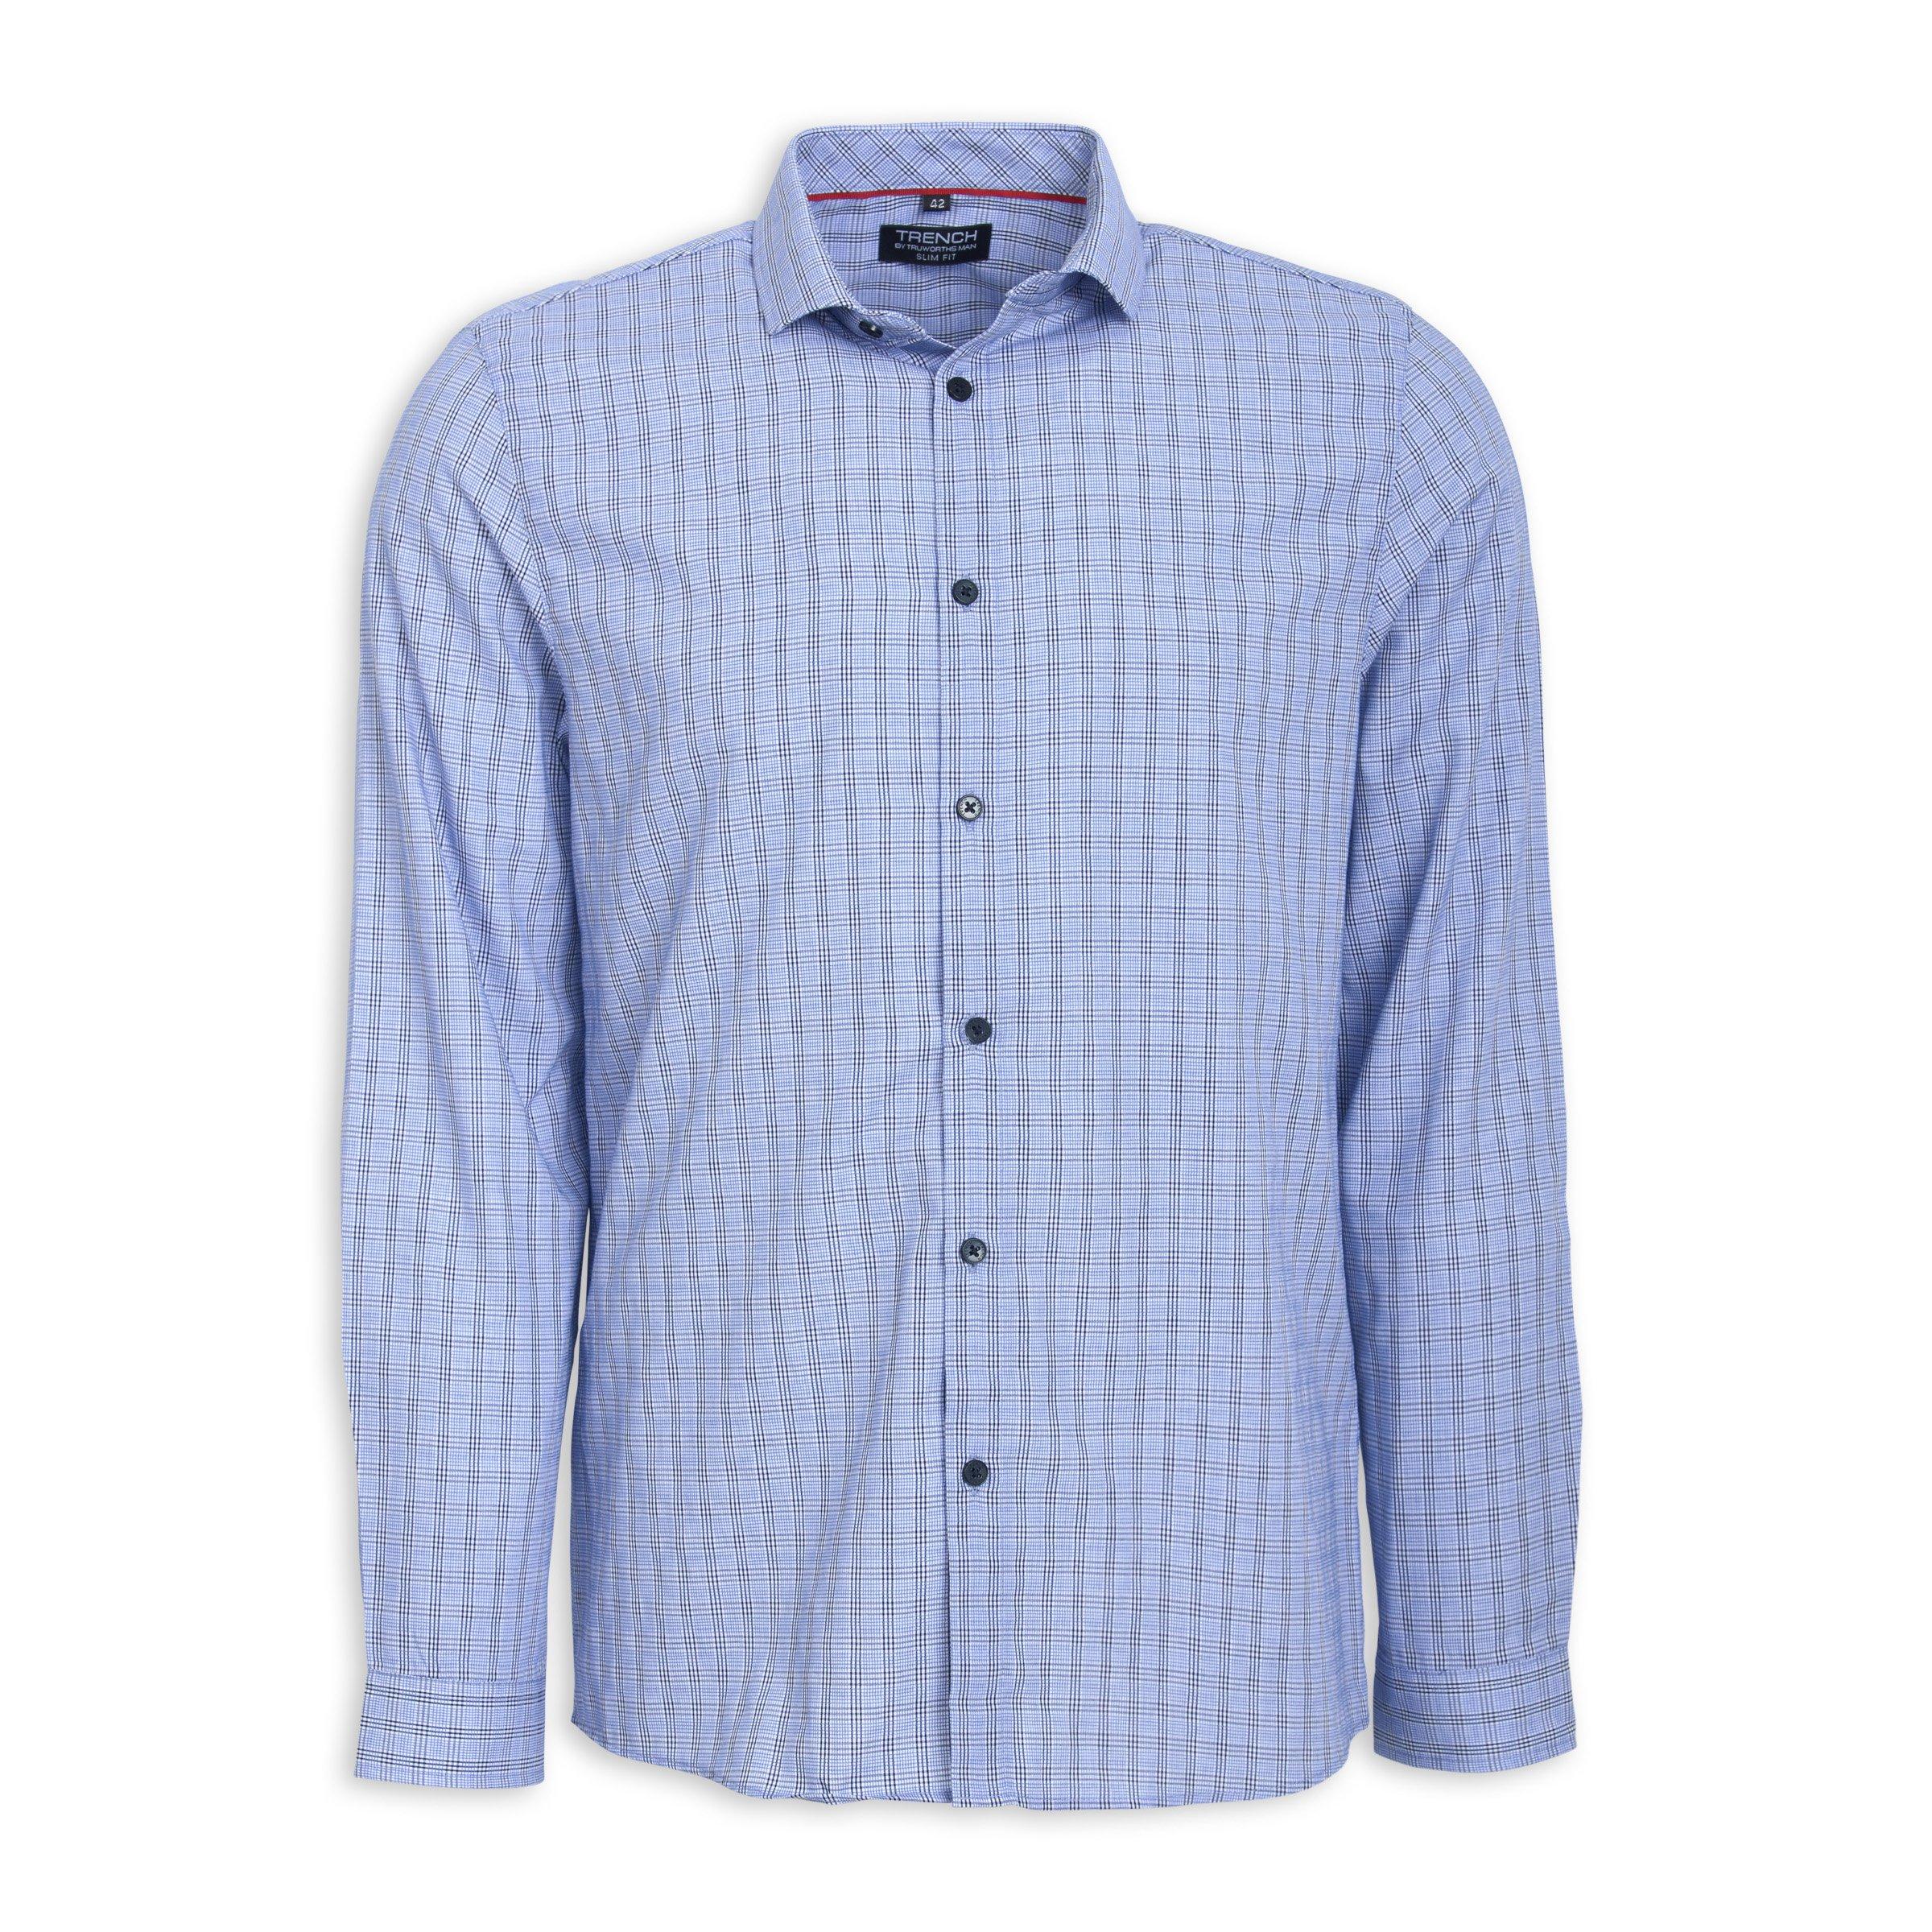 Buy Truworths Man Blue Check Slim Fit Shirt Online | Truworths